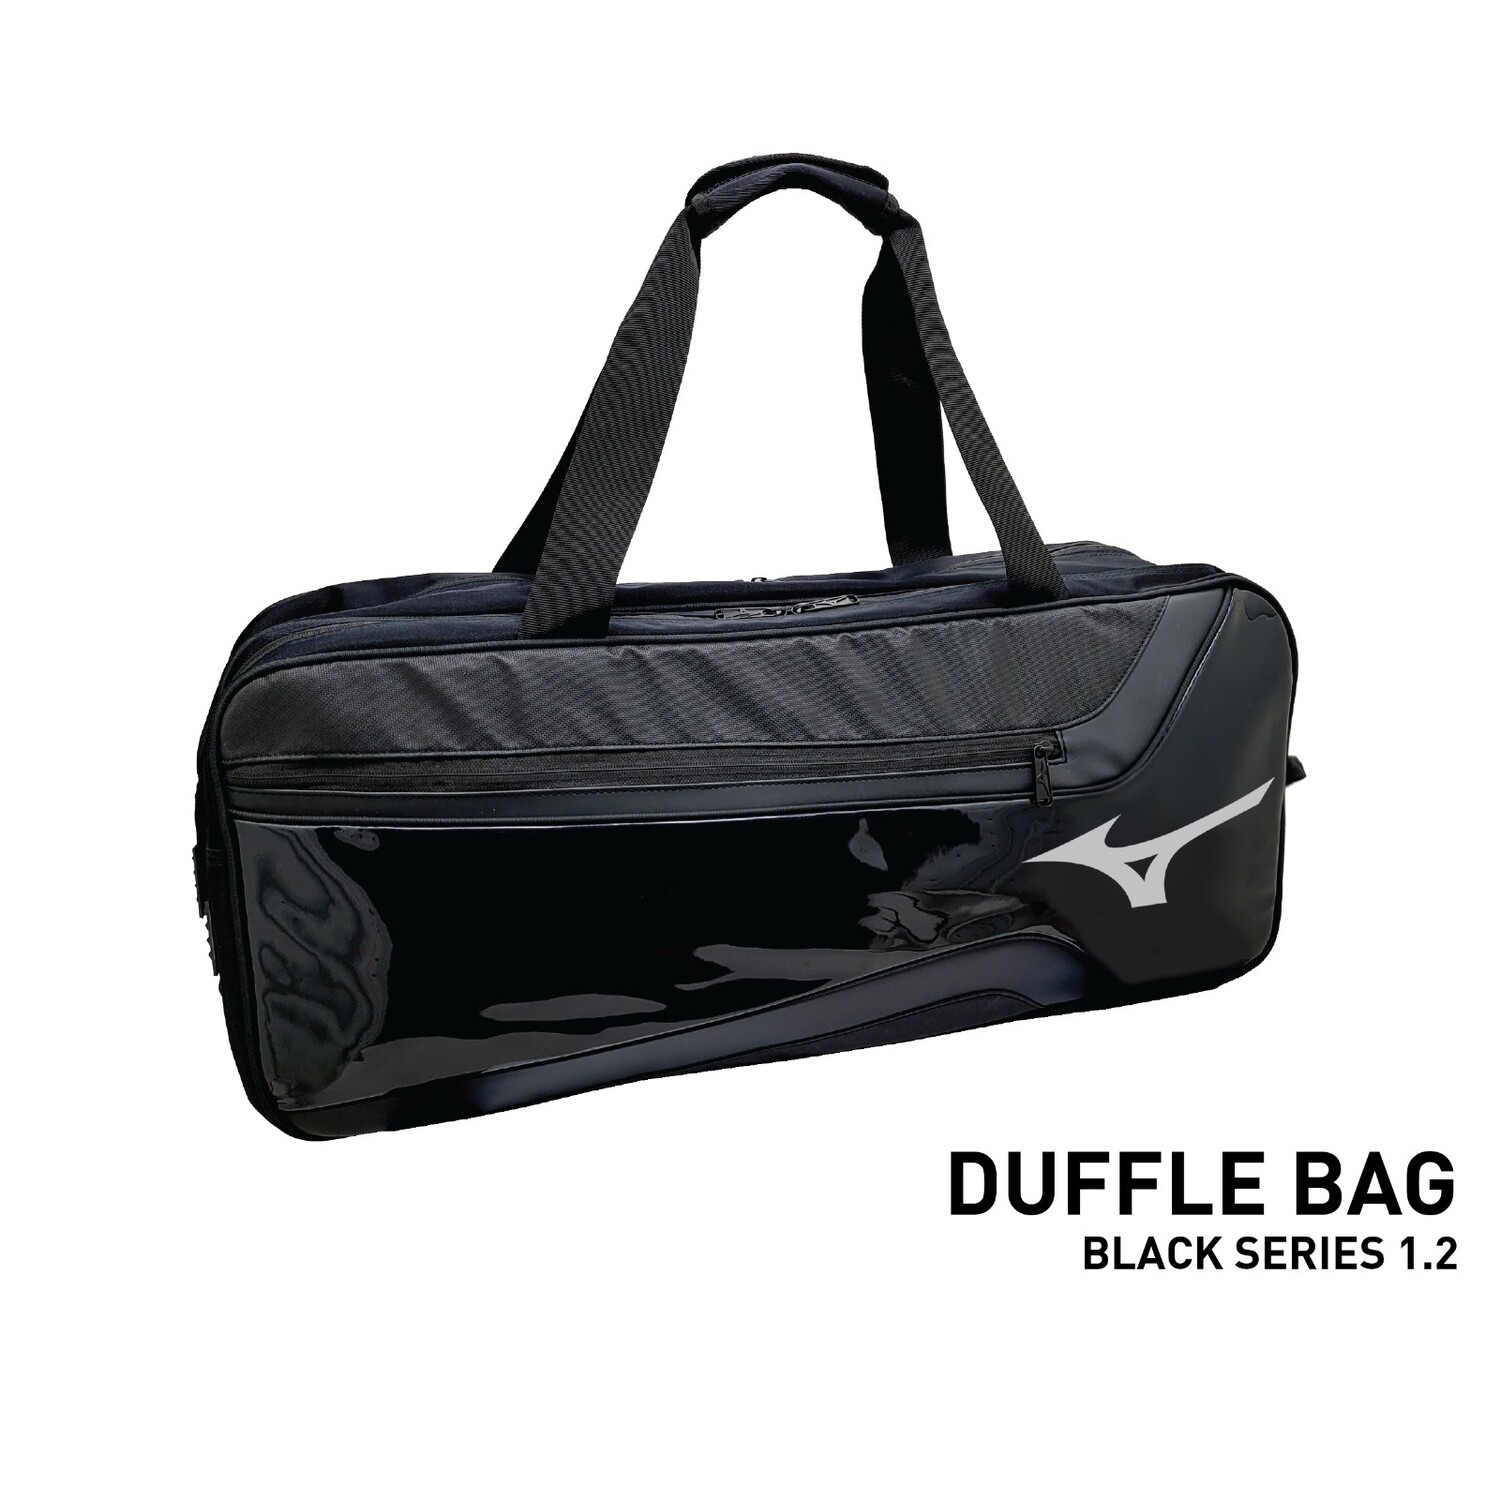 Mizuno Badminton Racket Bag - Black Series 1.2 Duffle Bag